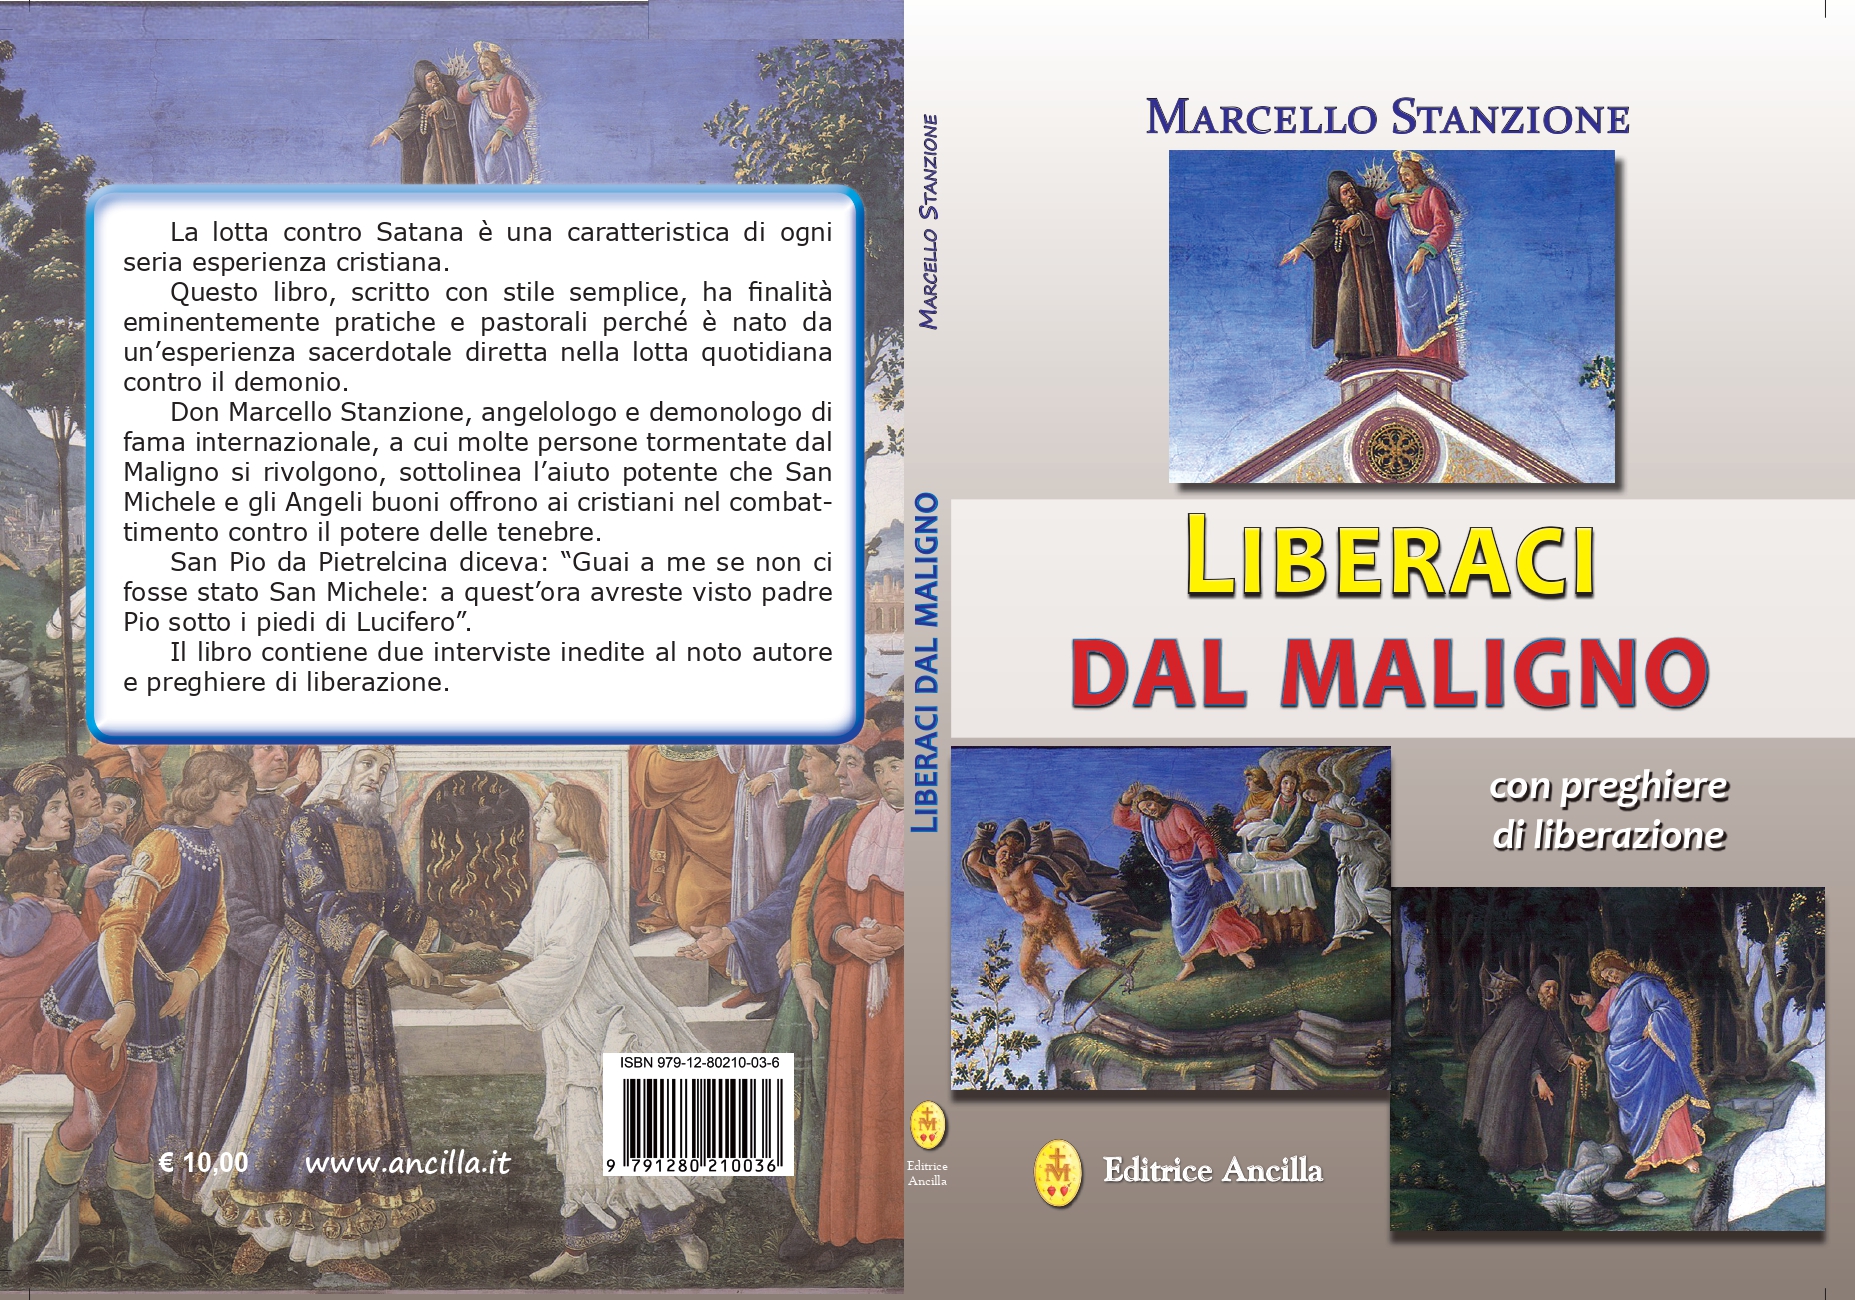 “Liberaci dal maligno” libro del demonologo Marcello Stanzione